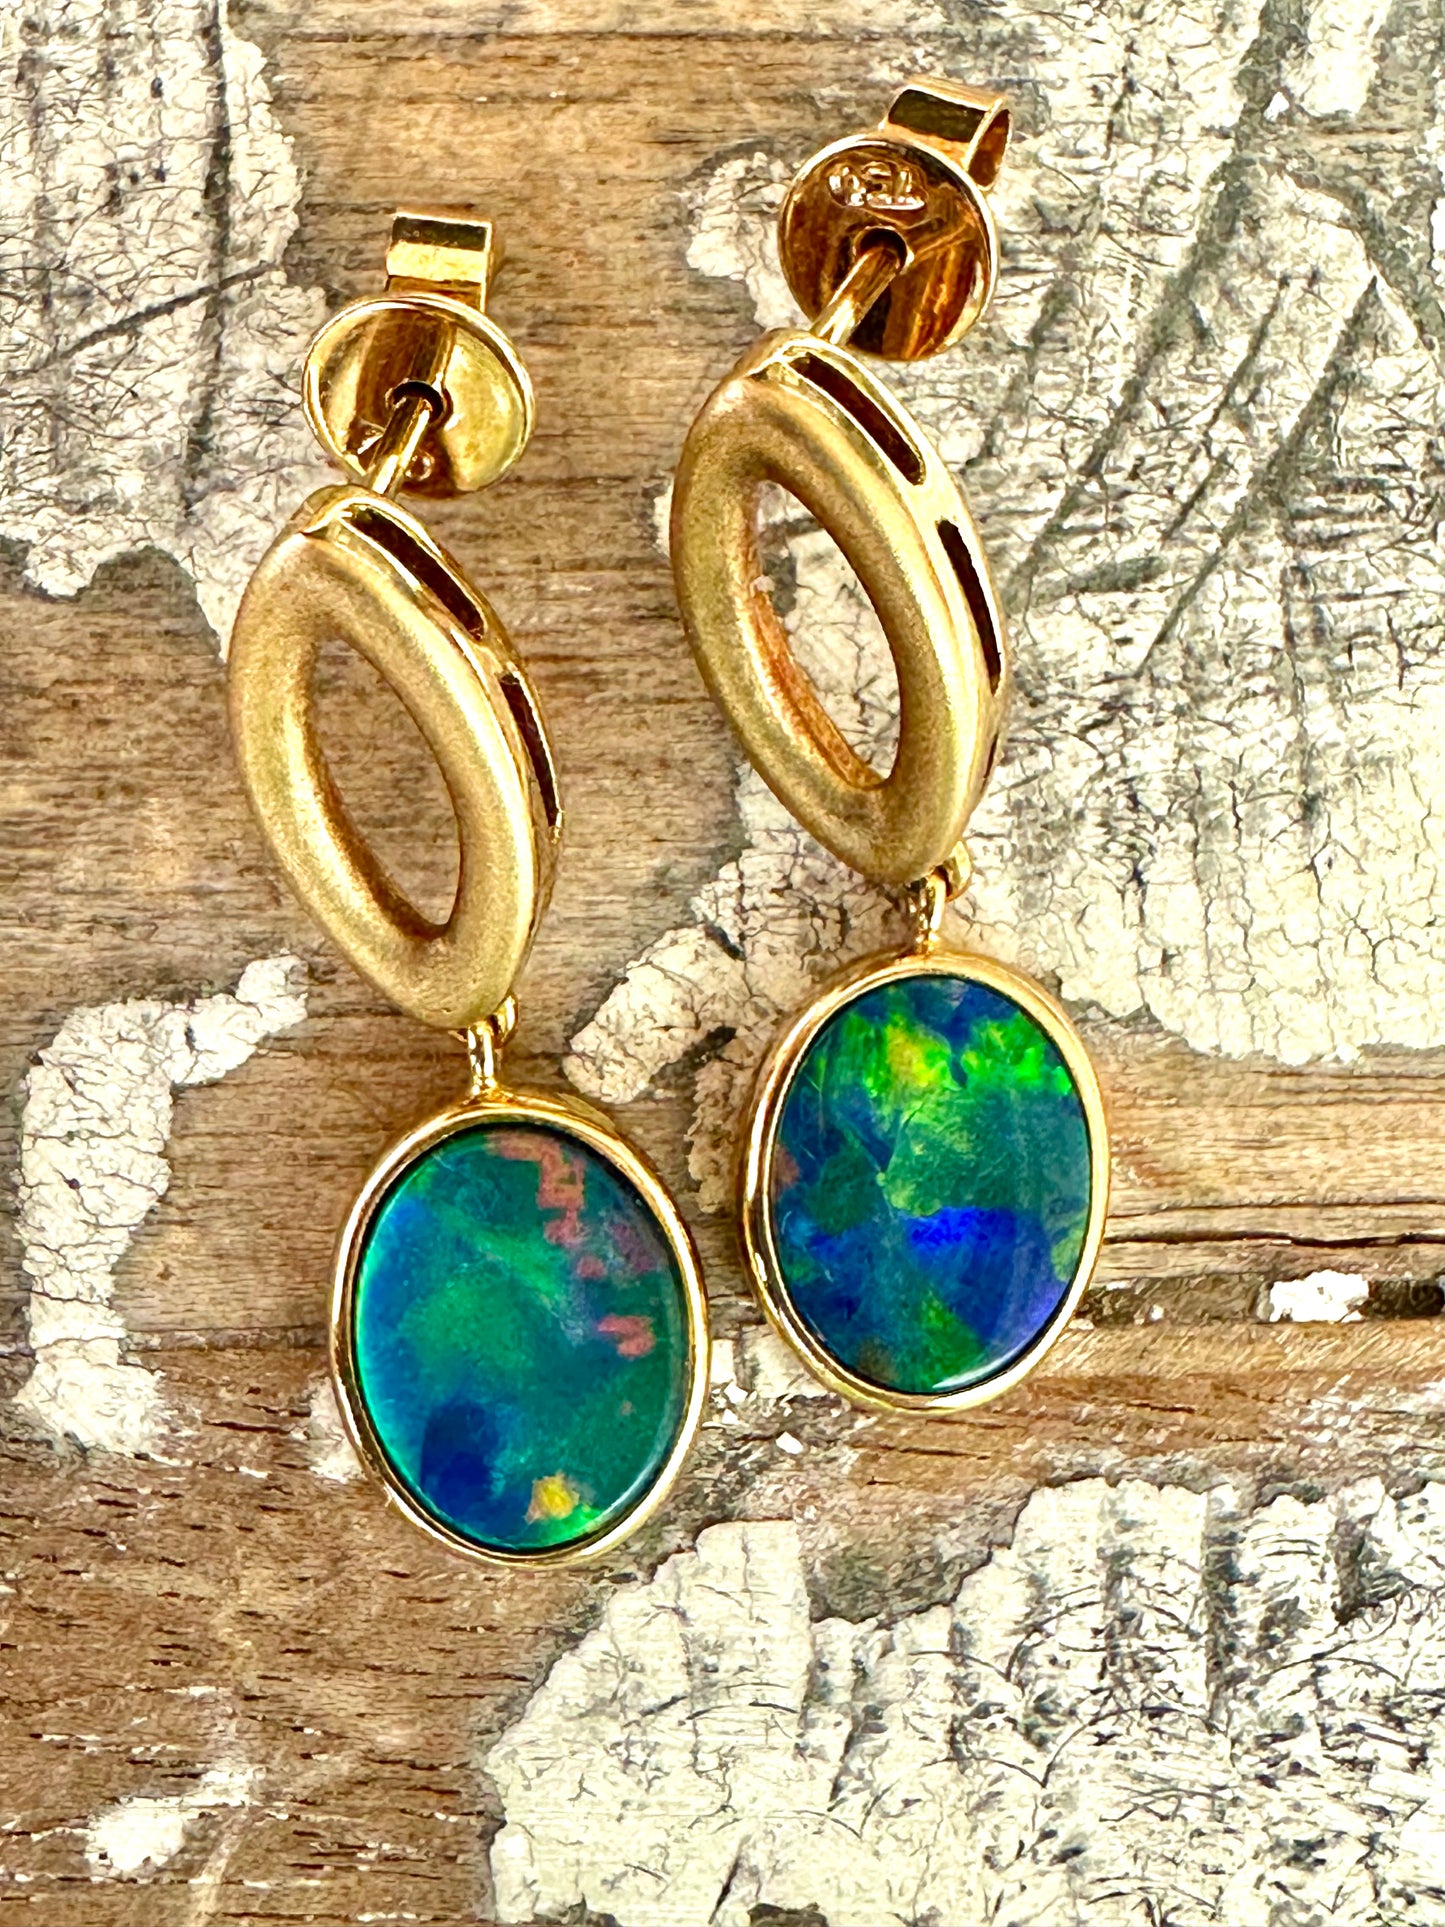  Opal Doublet earrings set in 18k yellow gold